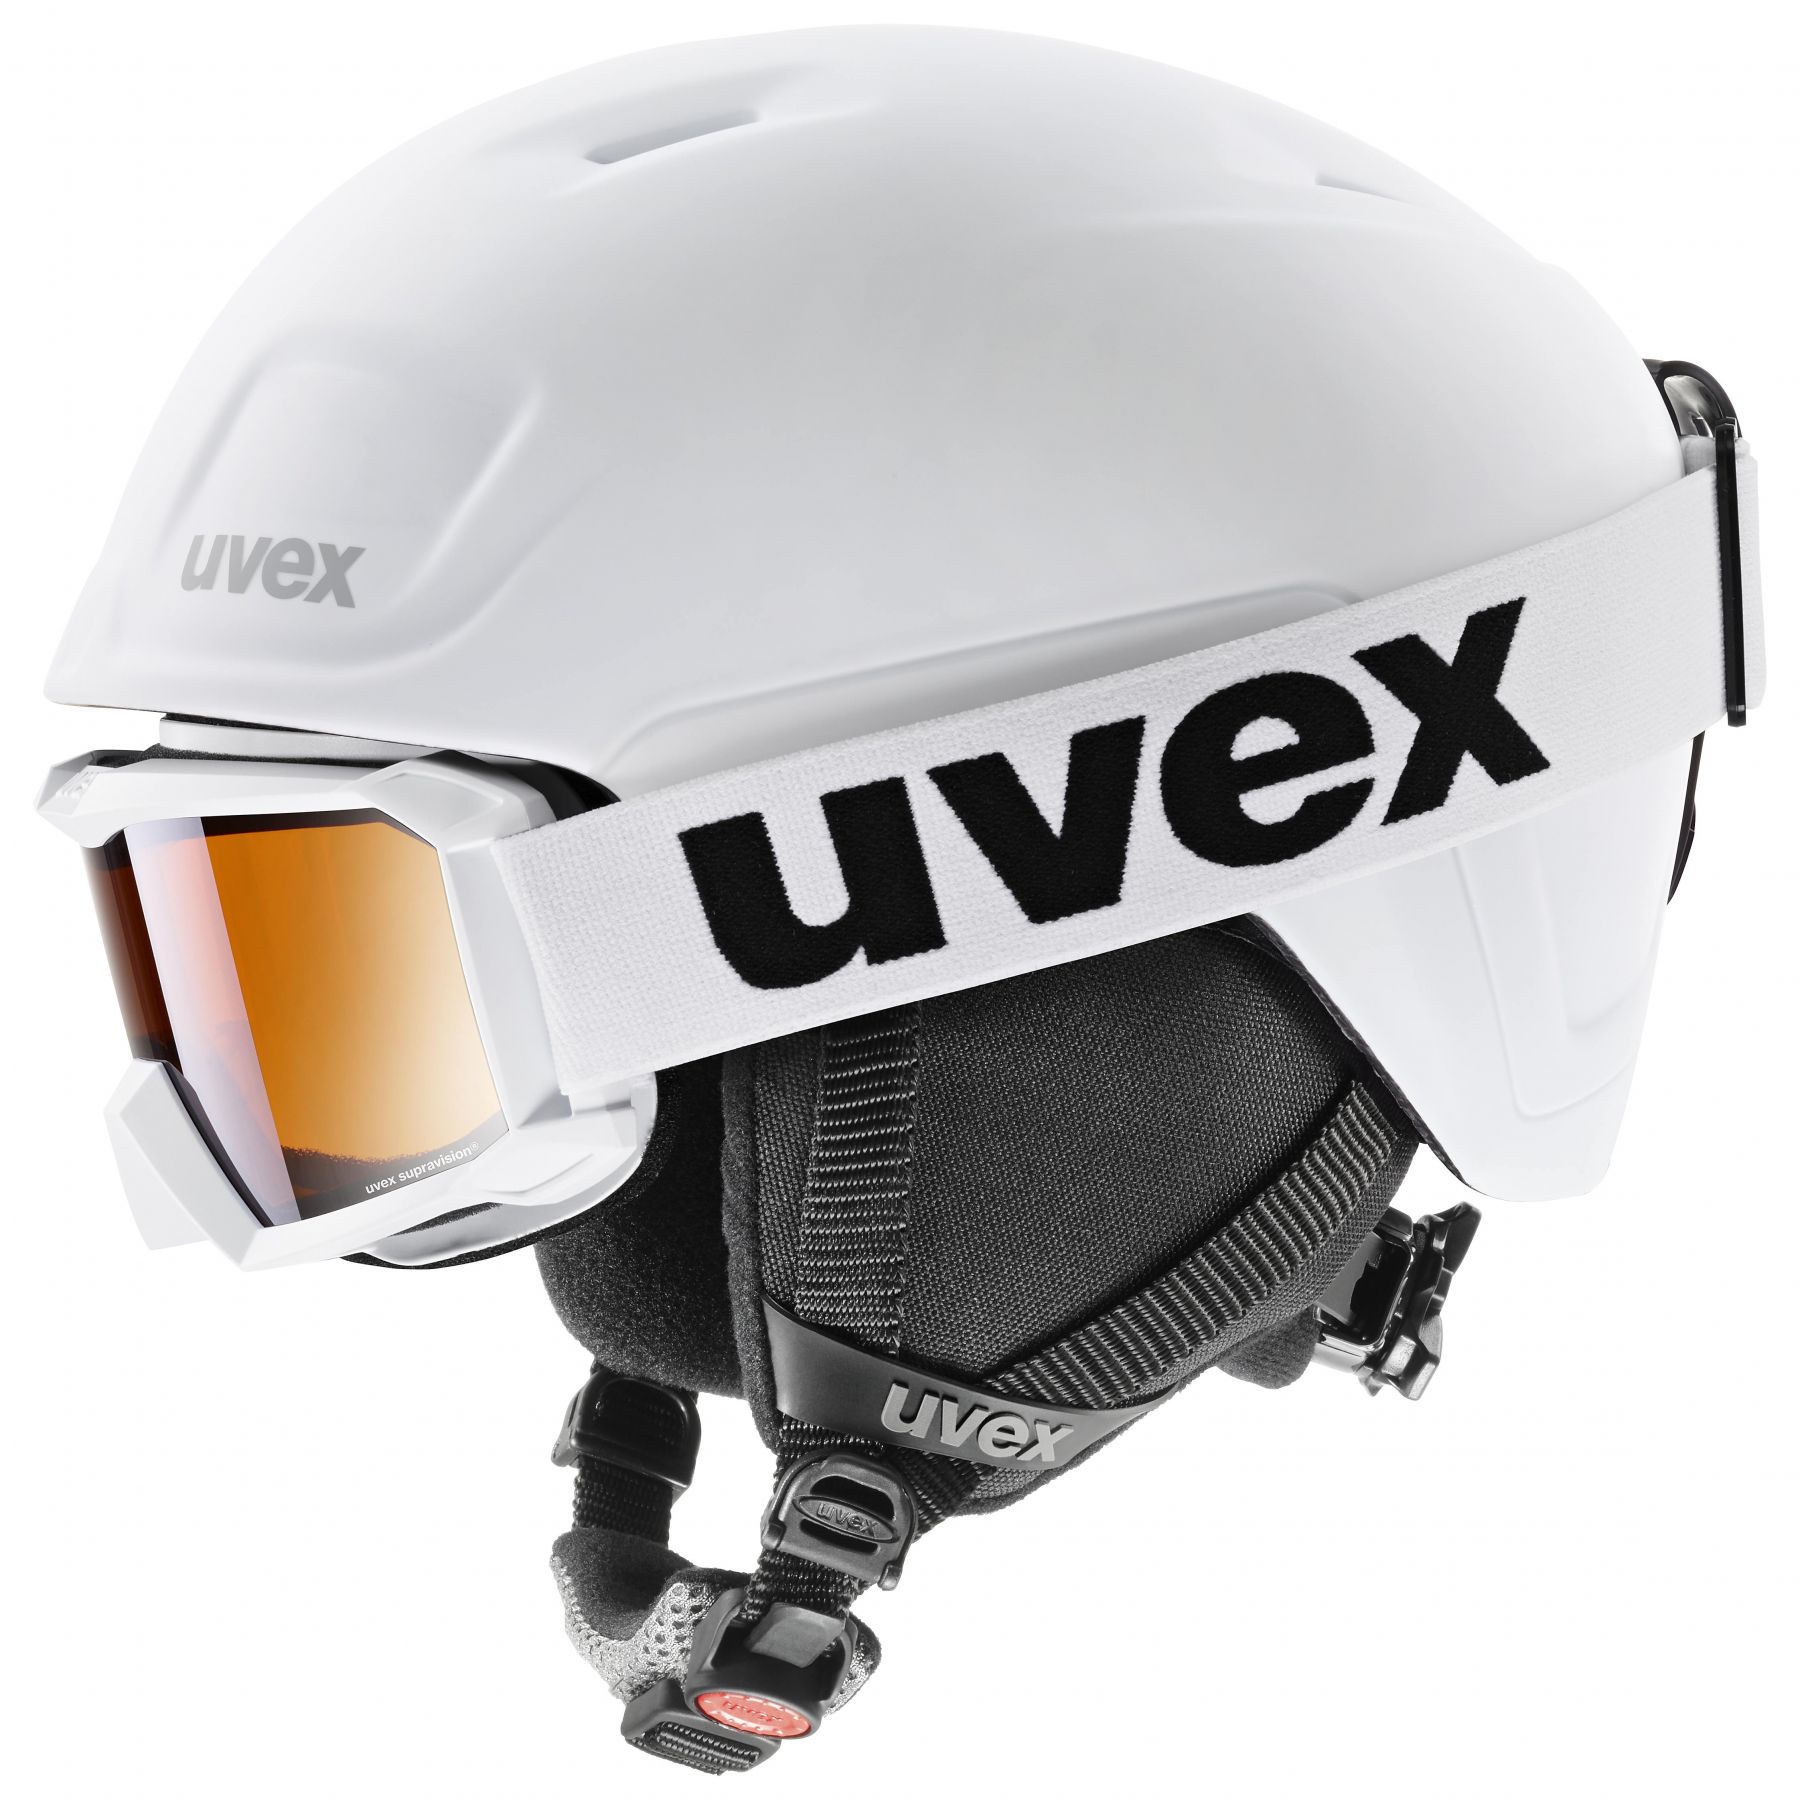 Brug Uvex Heyya Pro Set, skihjelm + skibrille, junior, hvid til en forbedret oplevelse